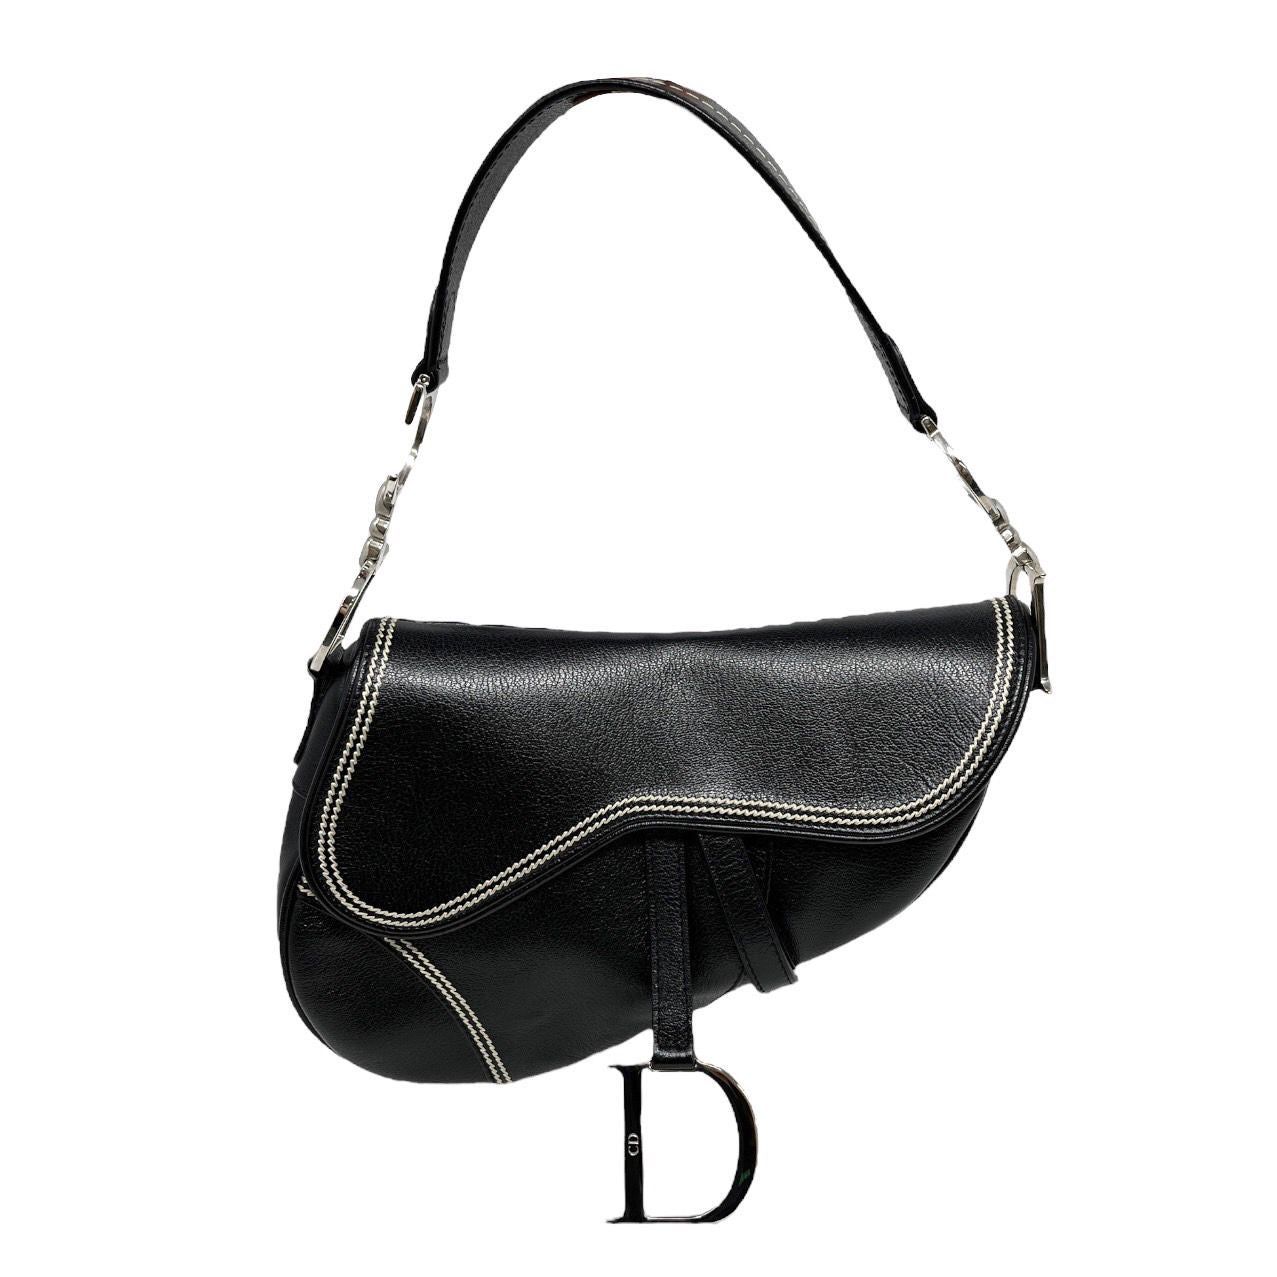 IMG_9850  Dior saddle bag, Saddle bags, Black leather outfit